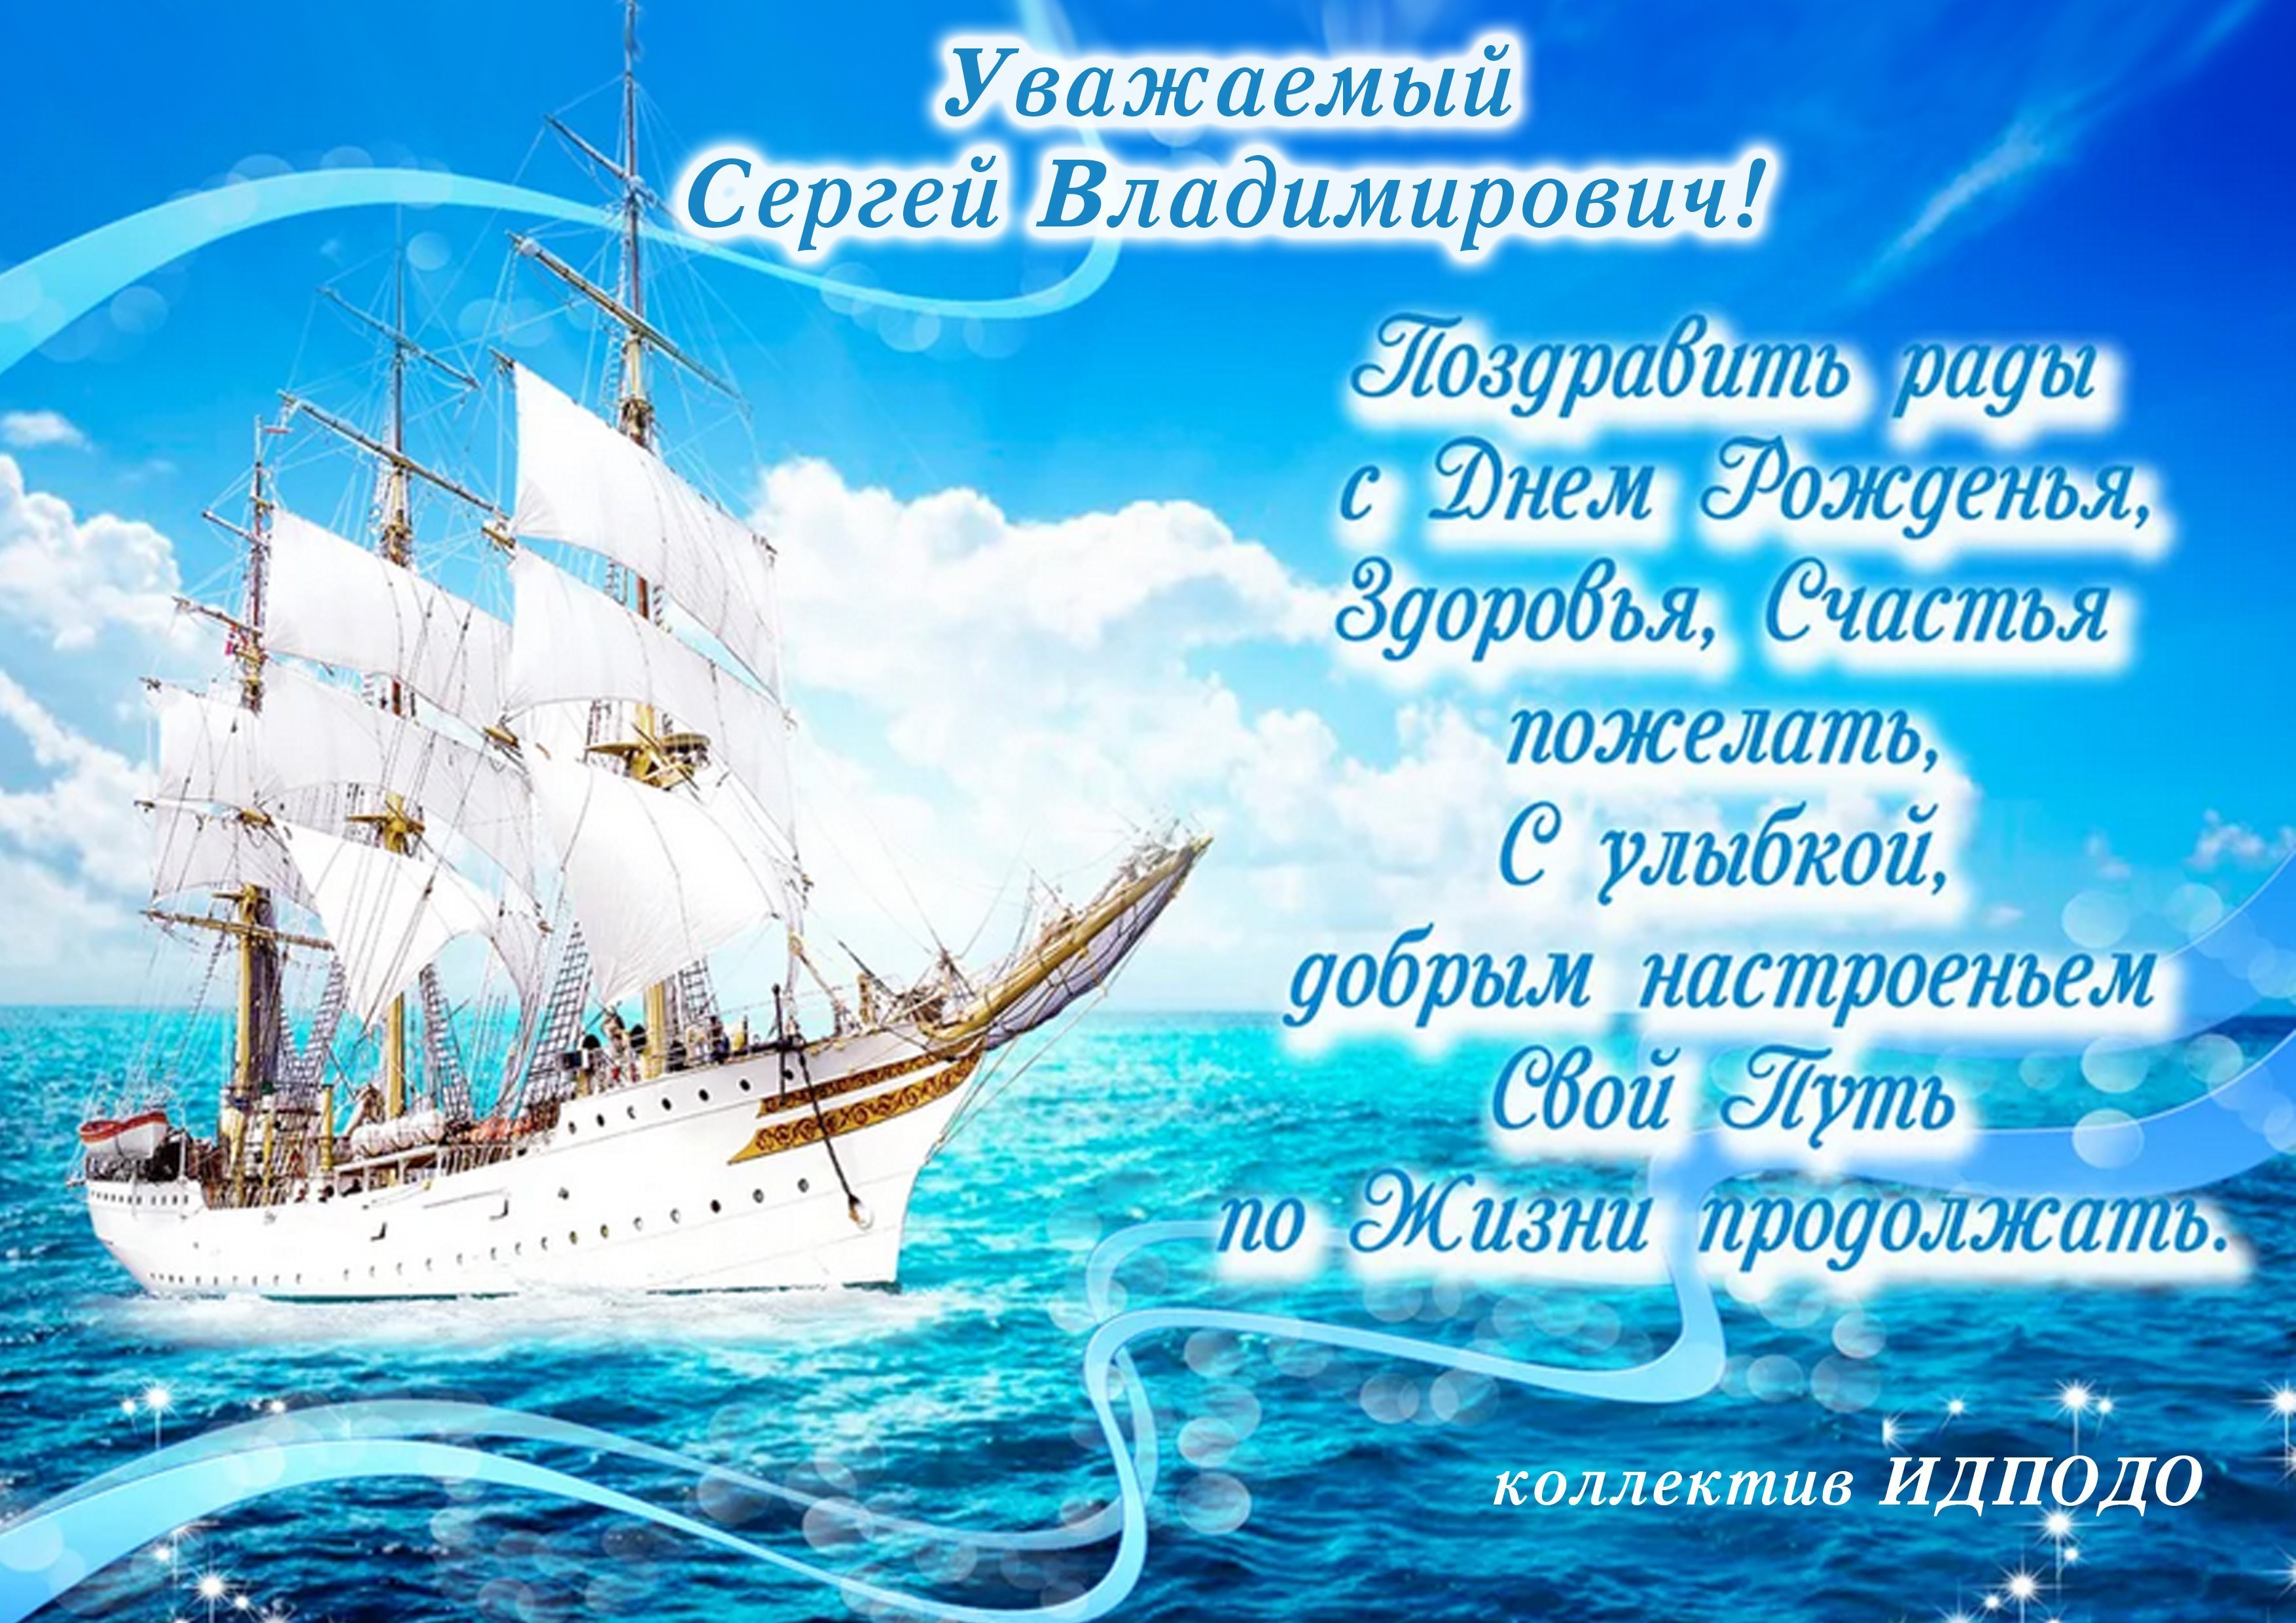 Белый старец из Бурятии пожелал россиянам море счастья и океан любви - новости Бурятии и Улан-Удэ